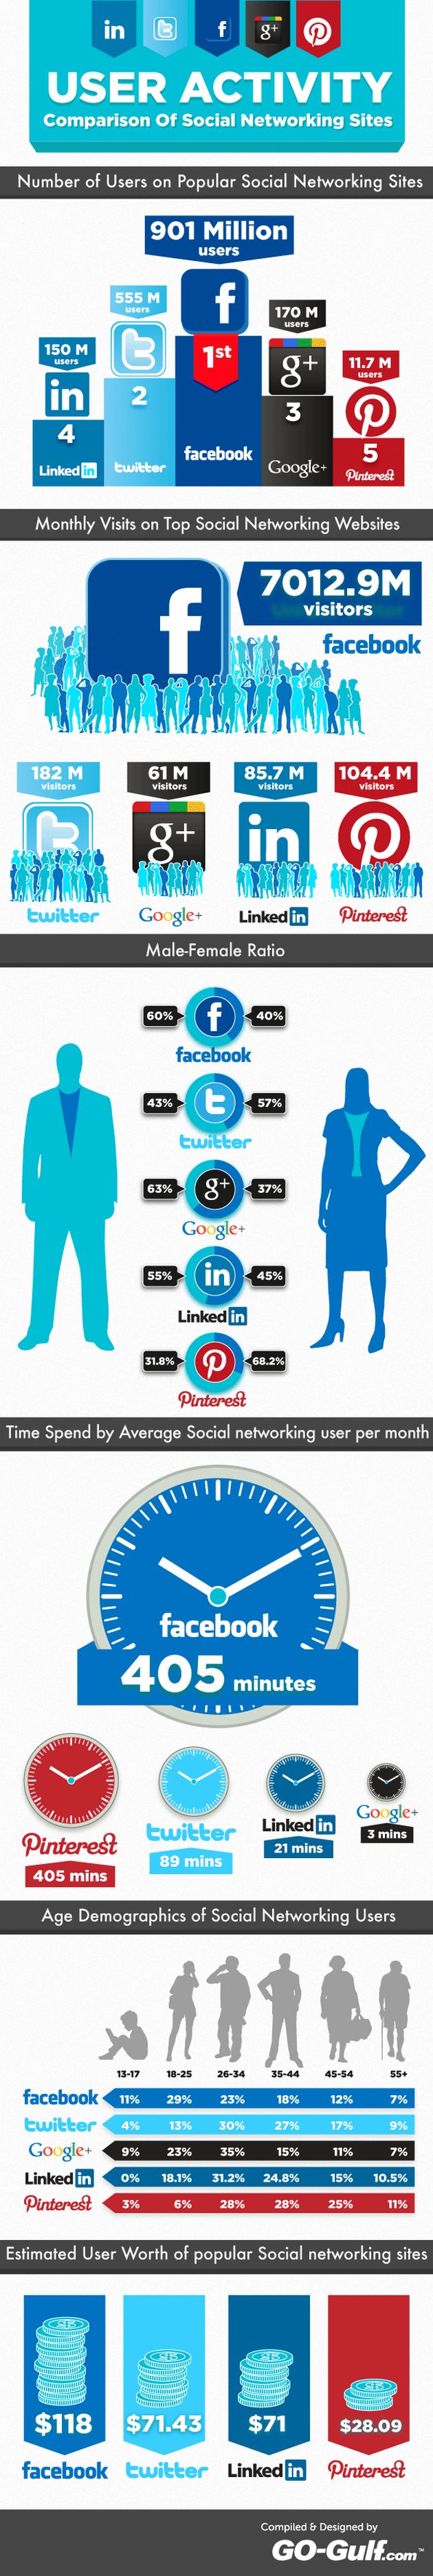 Excelente infografía comparativa de las diferencias de 5 grandes: Facebook, LinkedIn, Google+, Pinterest y Twitter